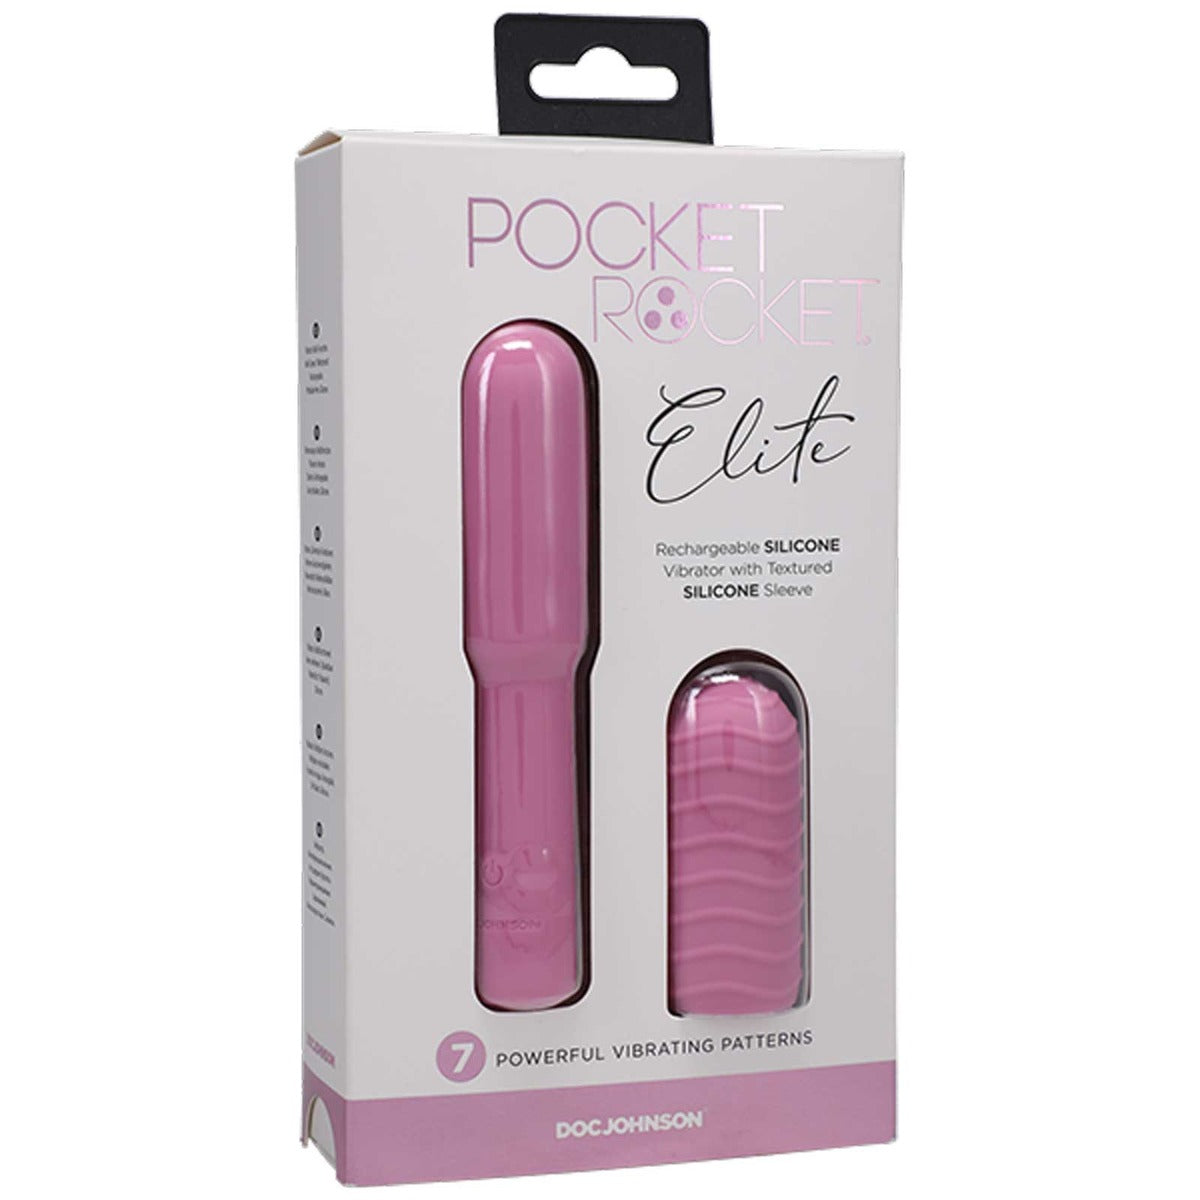 Pocket Rocket Elite Pink